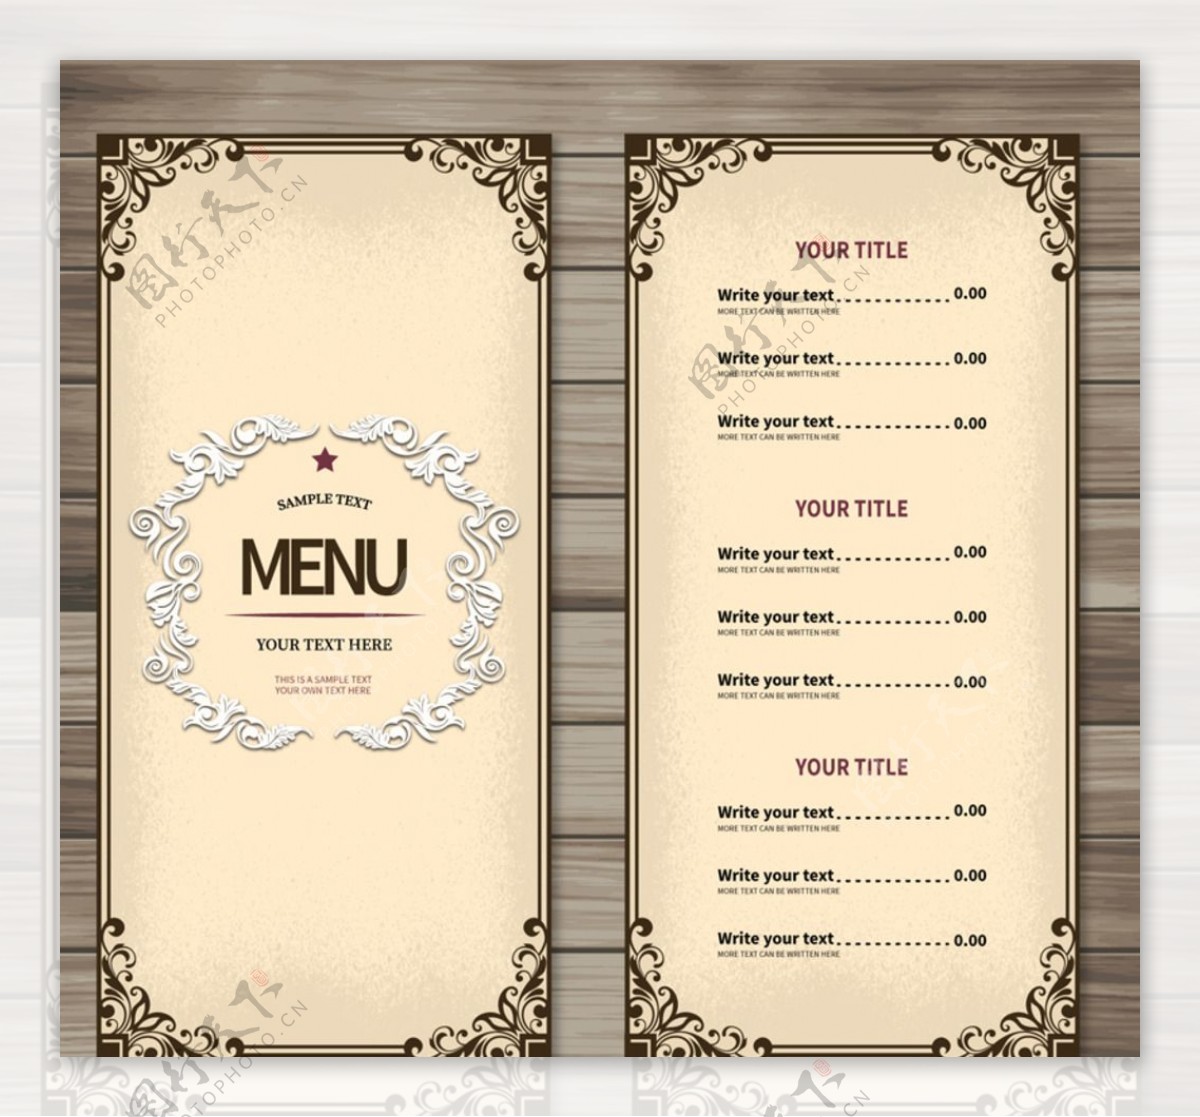 简约餐厅菜单设计矢量素材